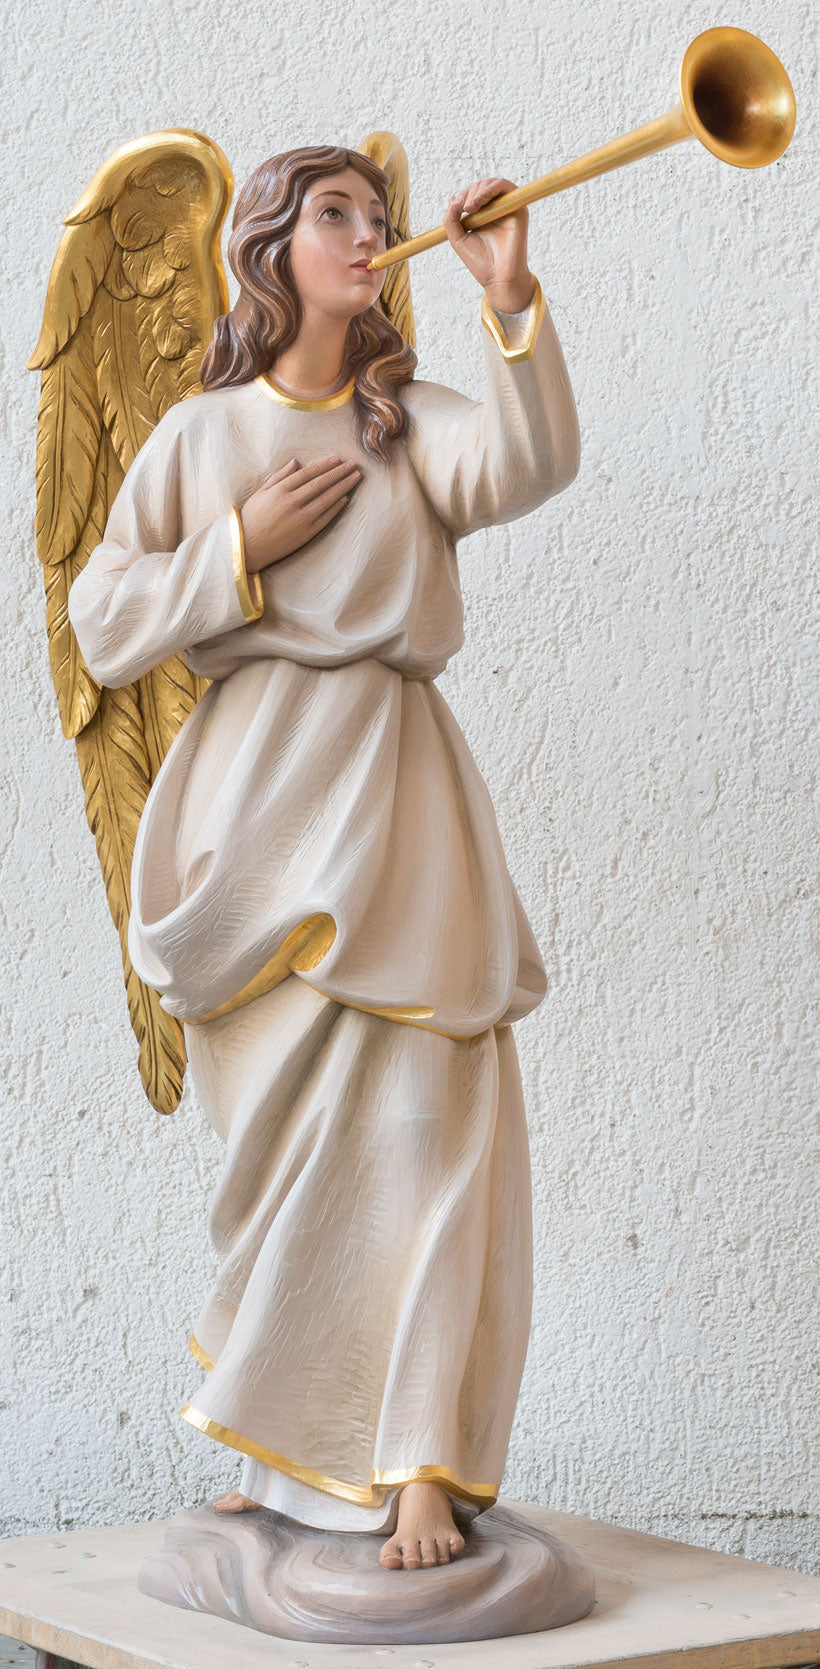 trumpeting-angels-statue-1295-1.jpg